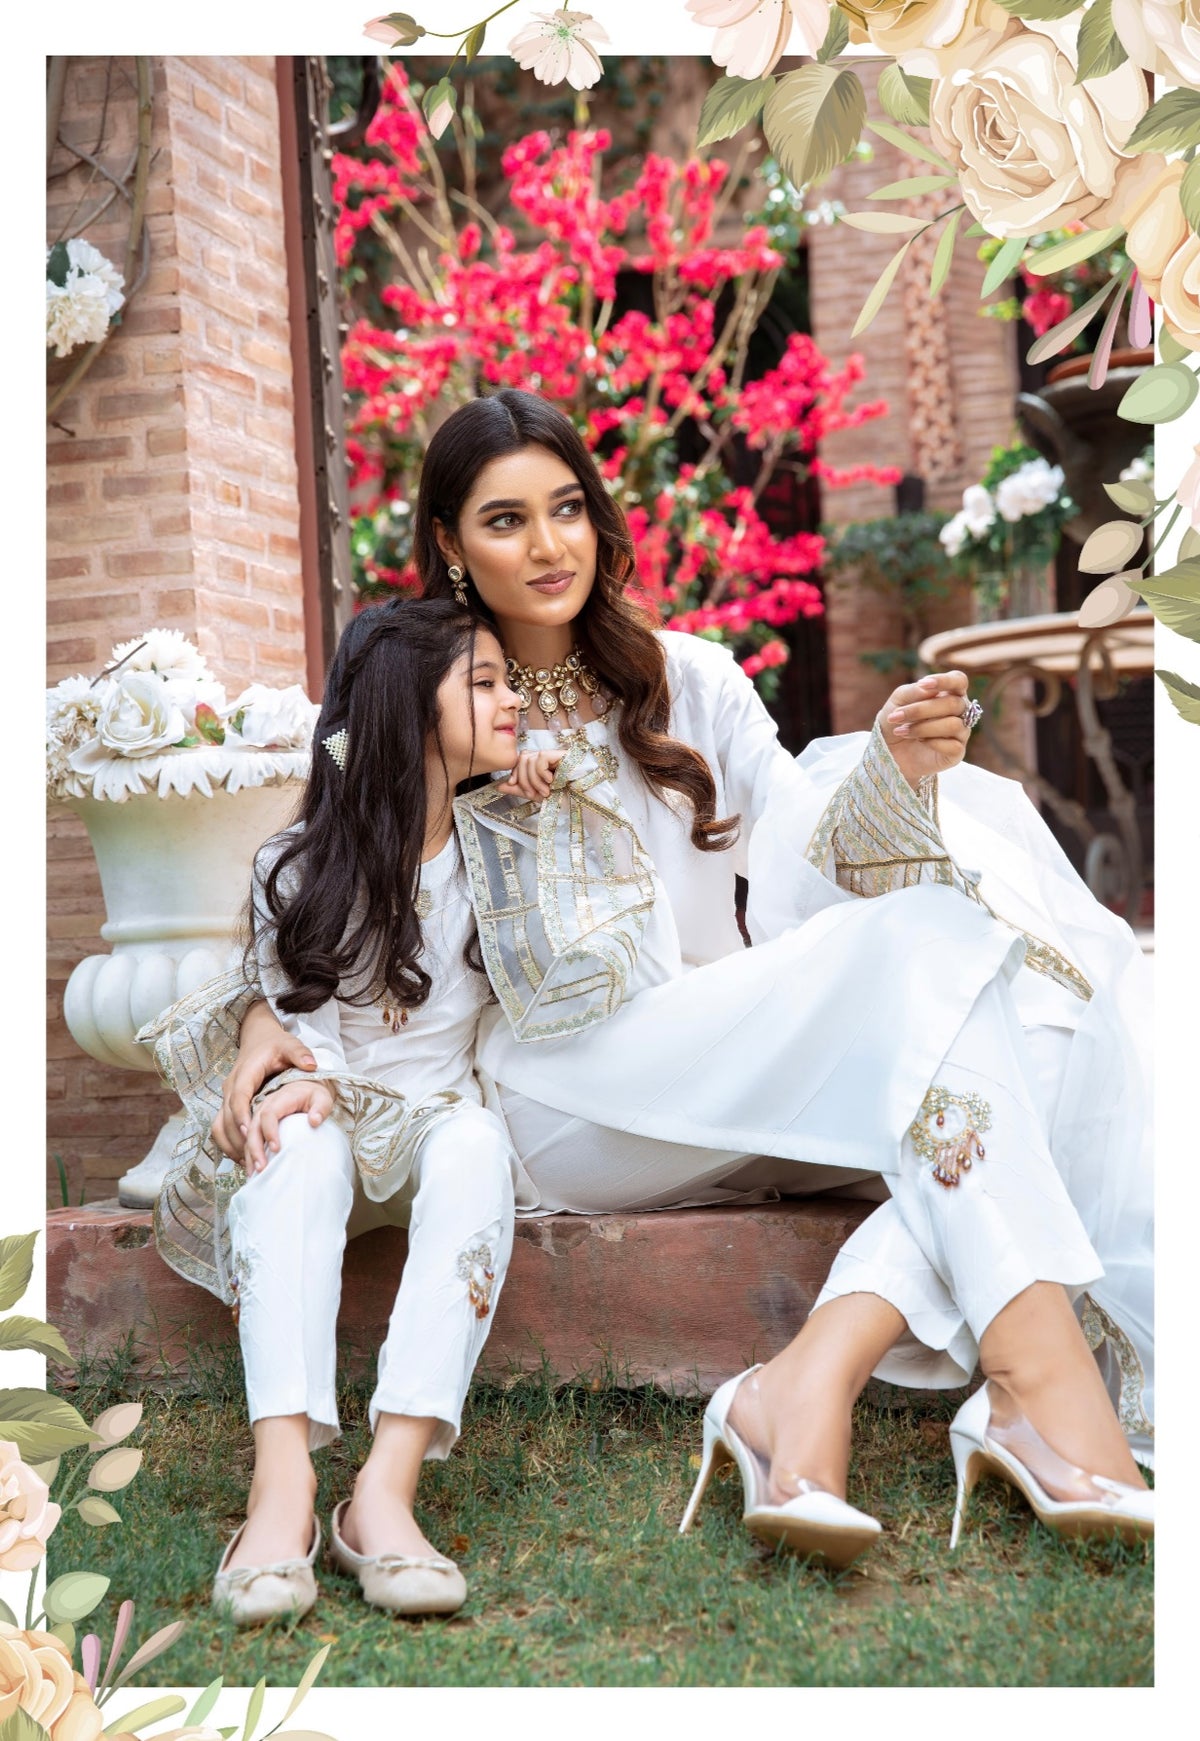 SIMRANS Kesariya 3 piece mother and daughter luxury suit in white - SKEC02